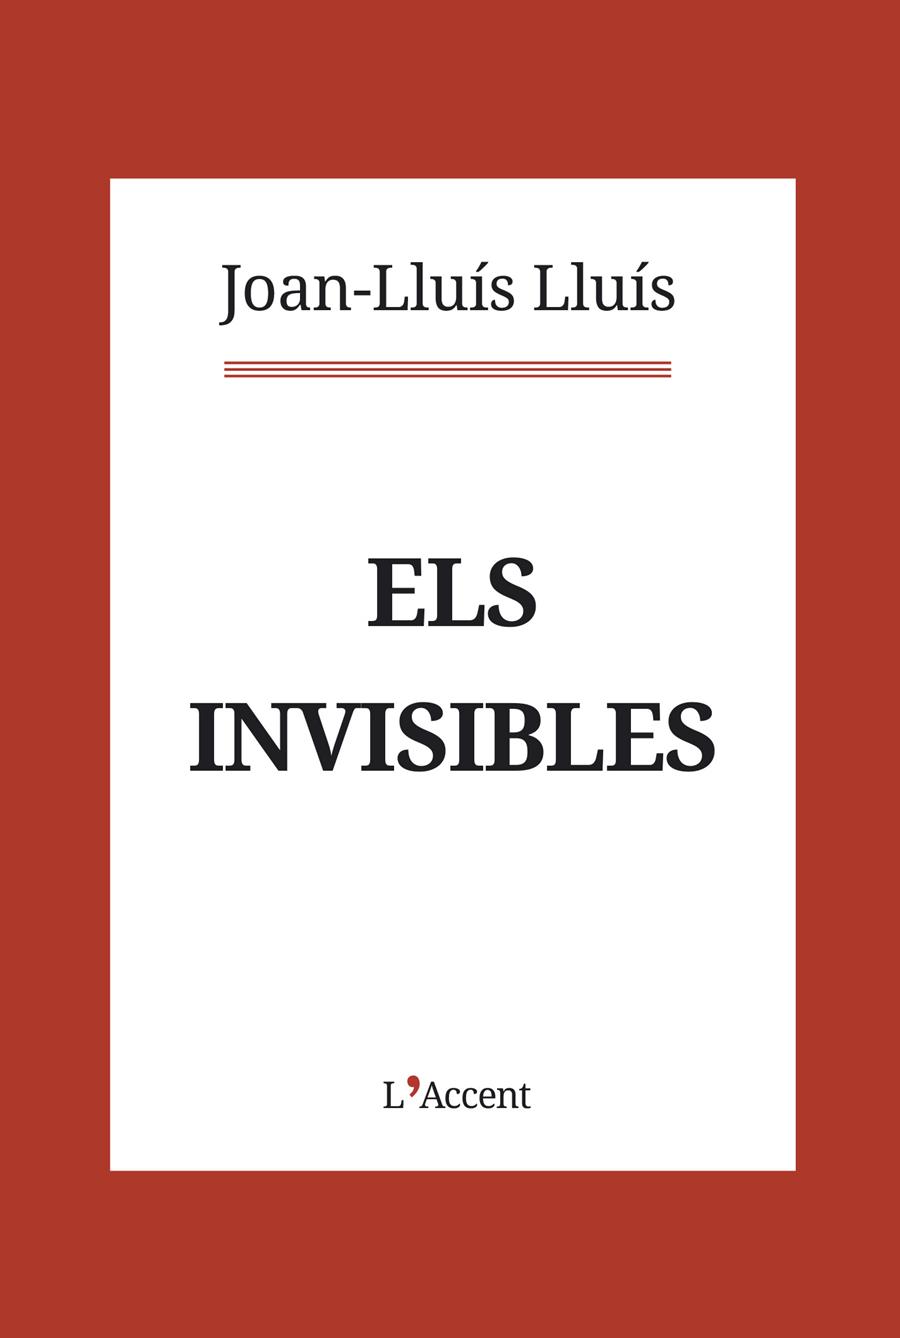 Els invisibles | Lluís, Joan-Lluís | Cooperativa autogestionària